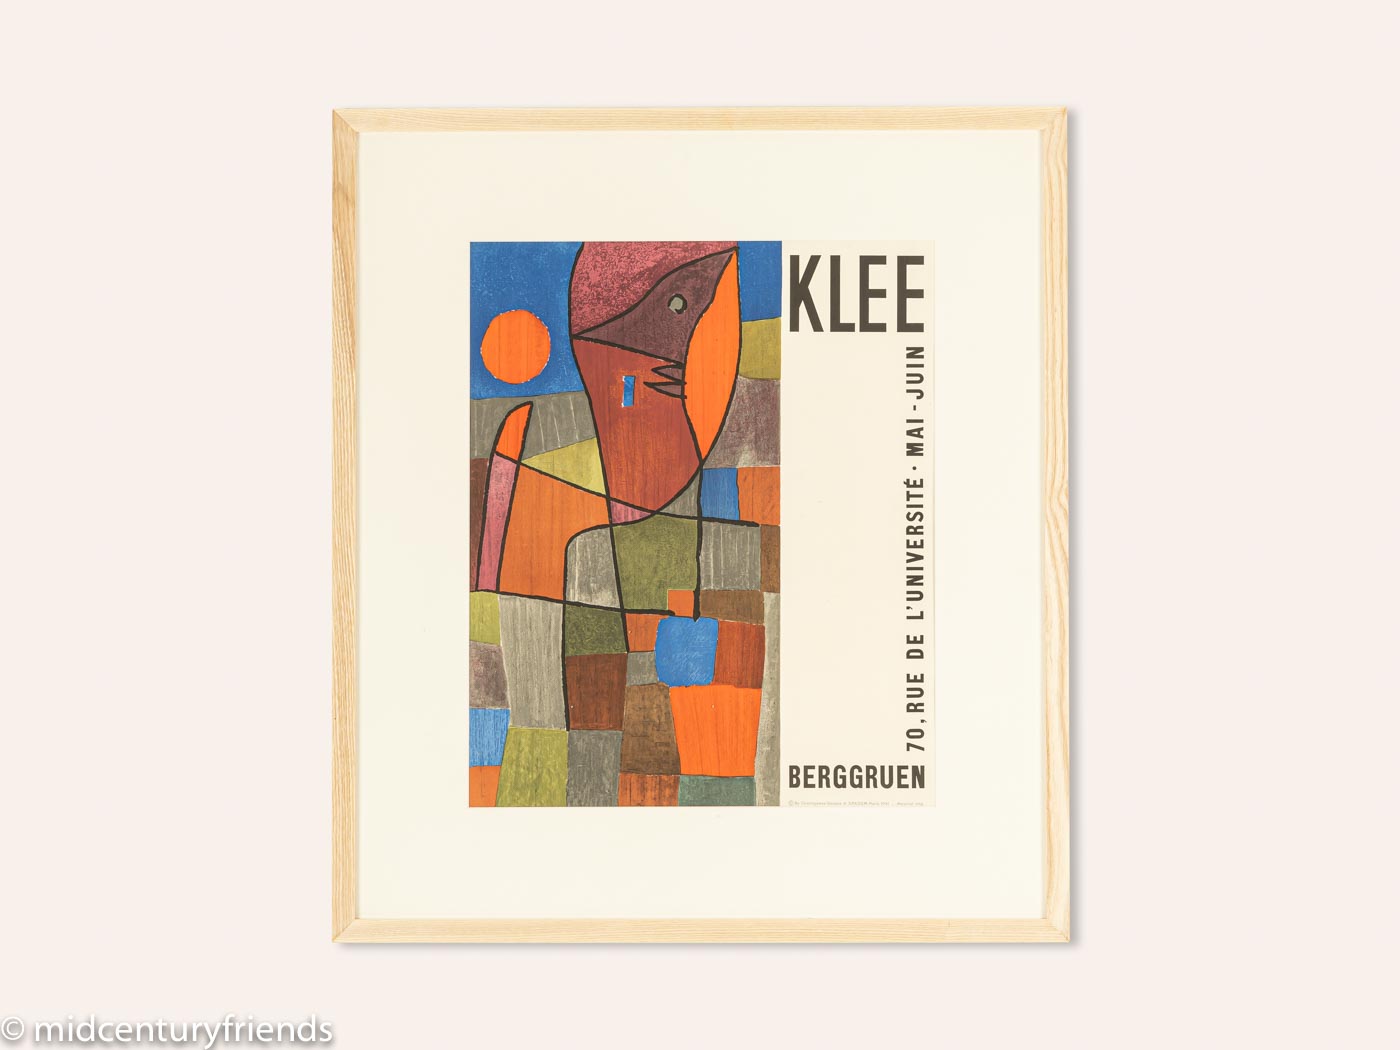 Paul KLEE, Printed by Mourlot